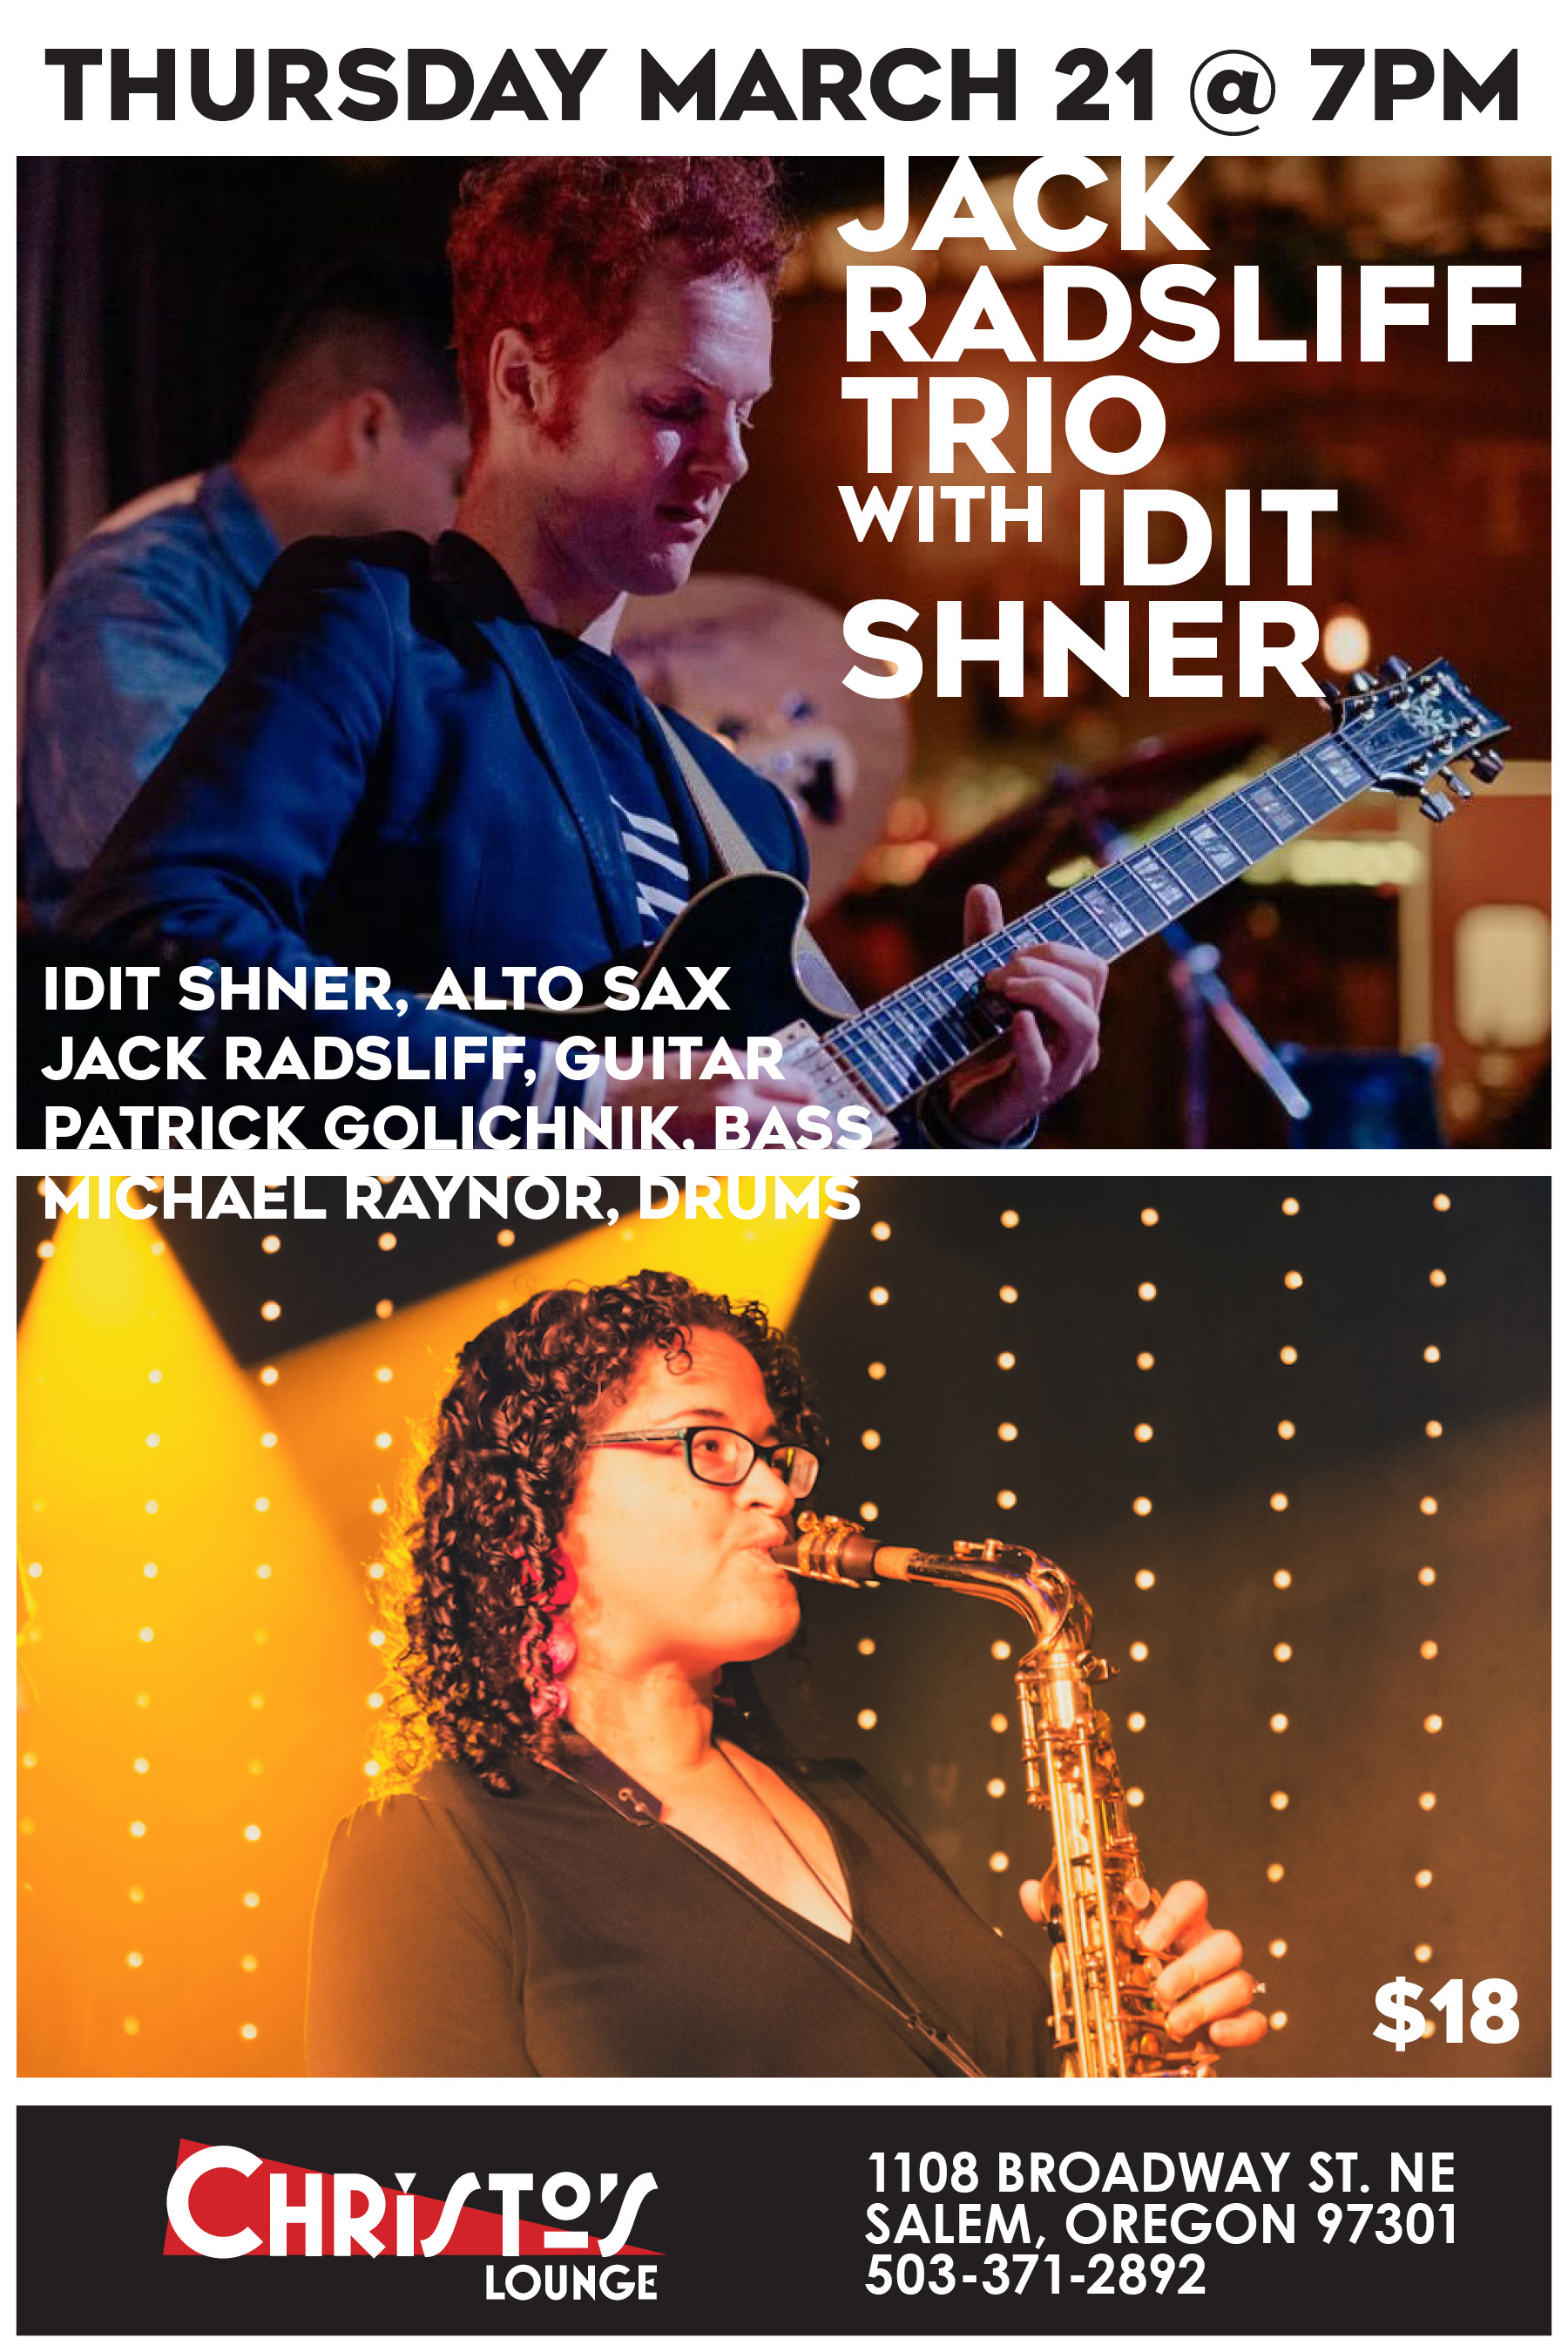 Jack Radsliff Trio with Idit Shnher